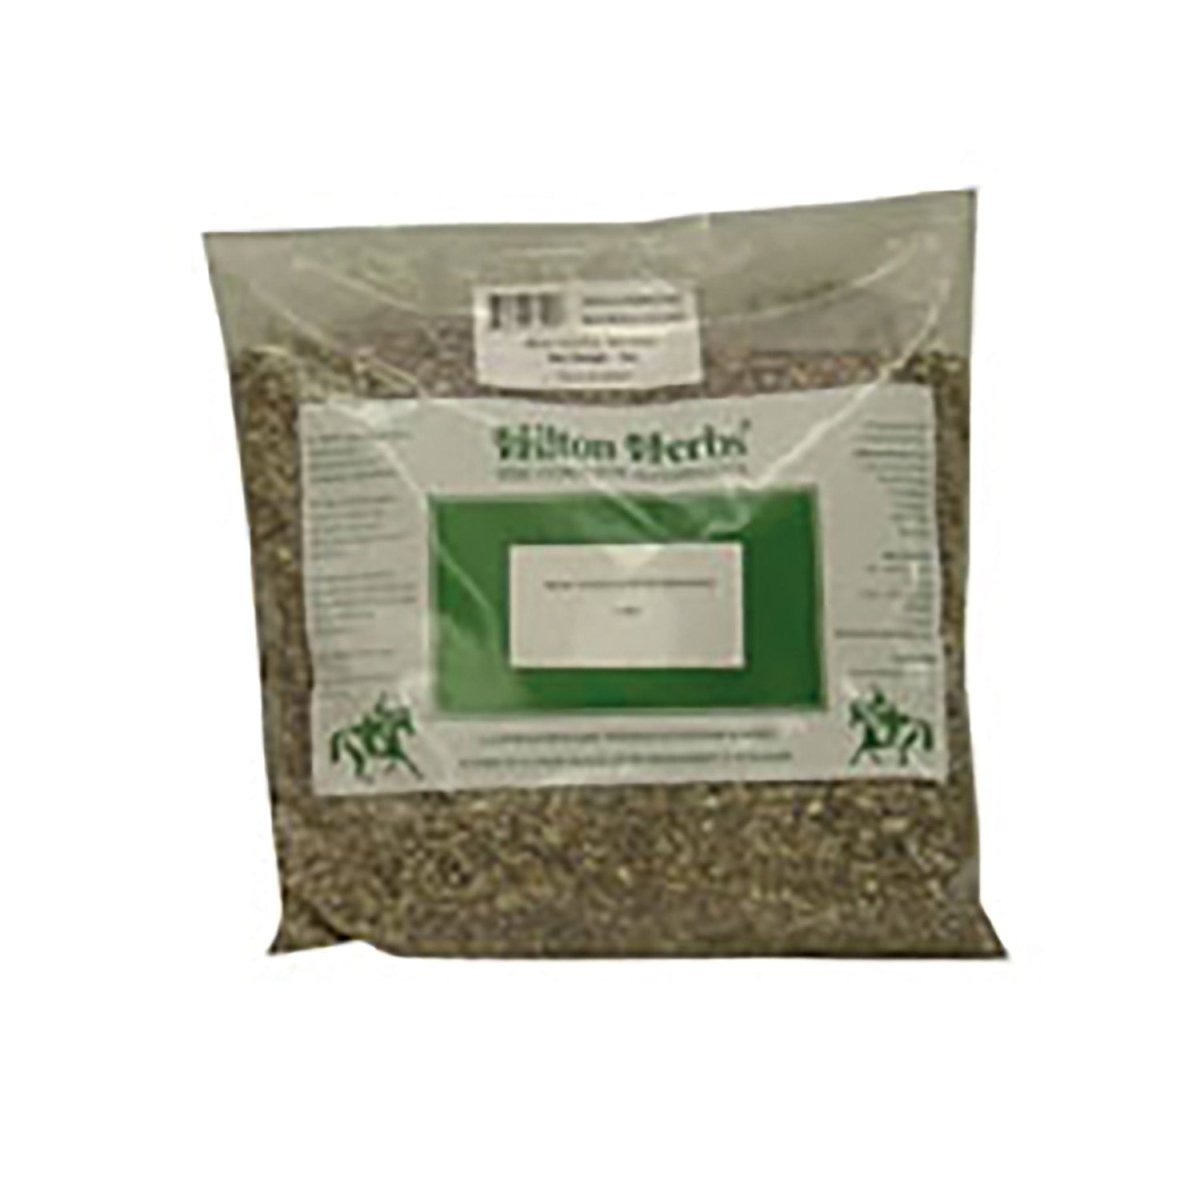 Hilton Herbs Milk Thistle Seed Bruised - 1Kg -